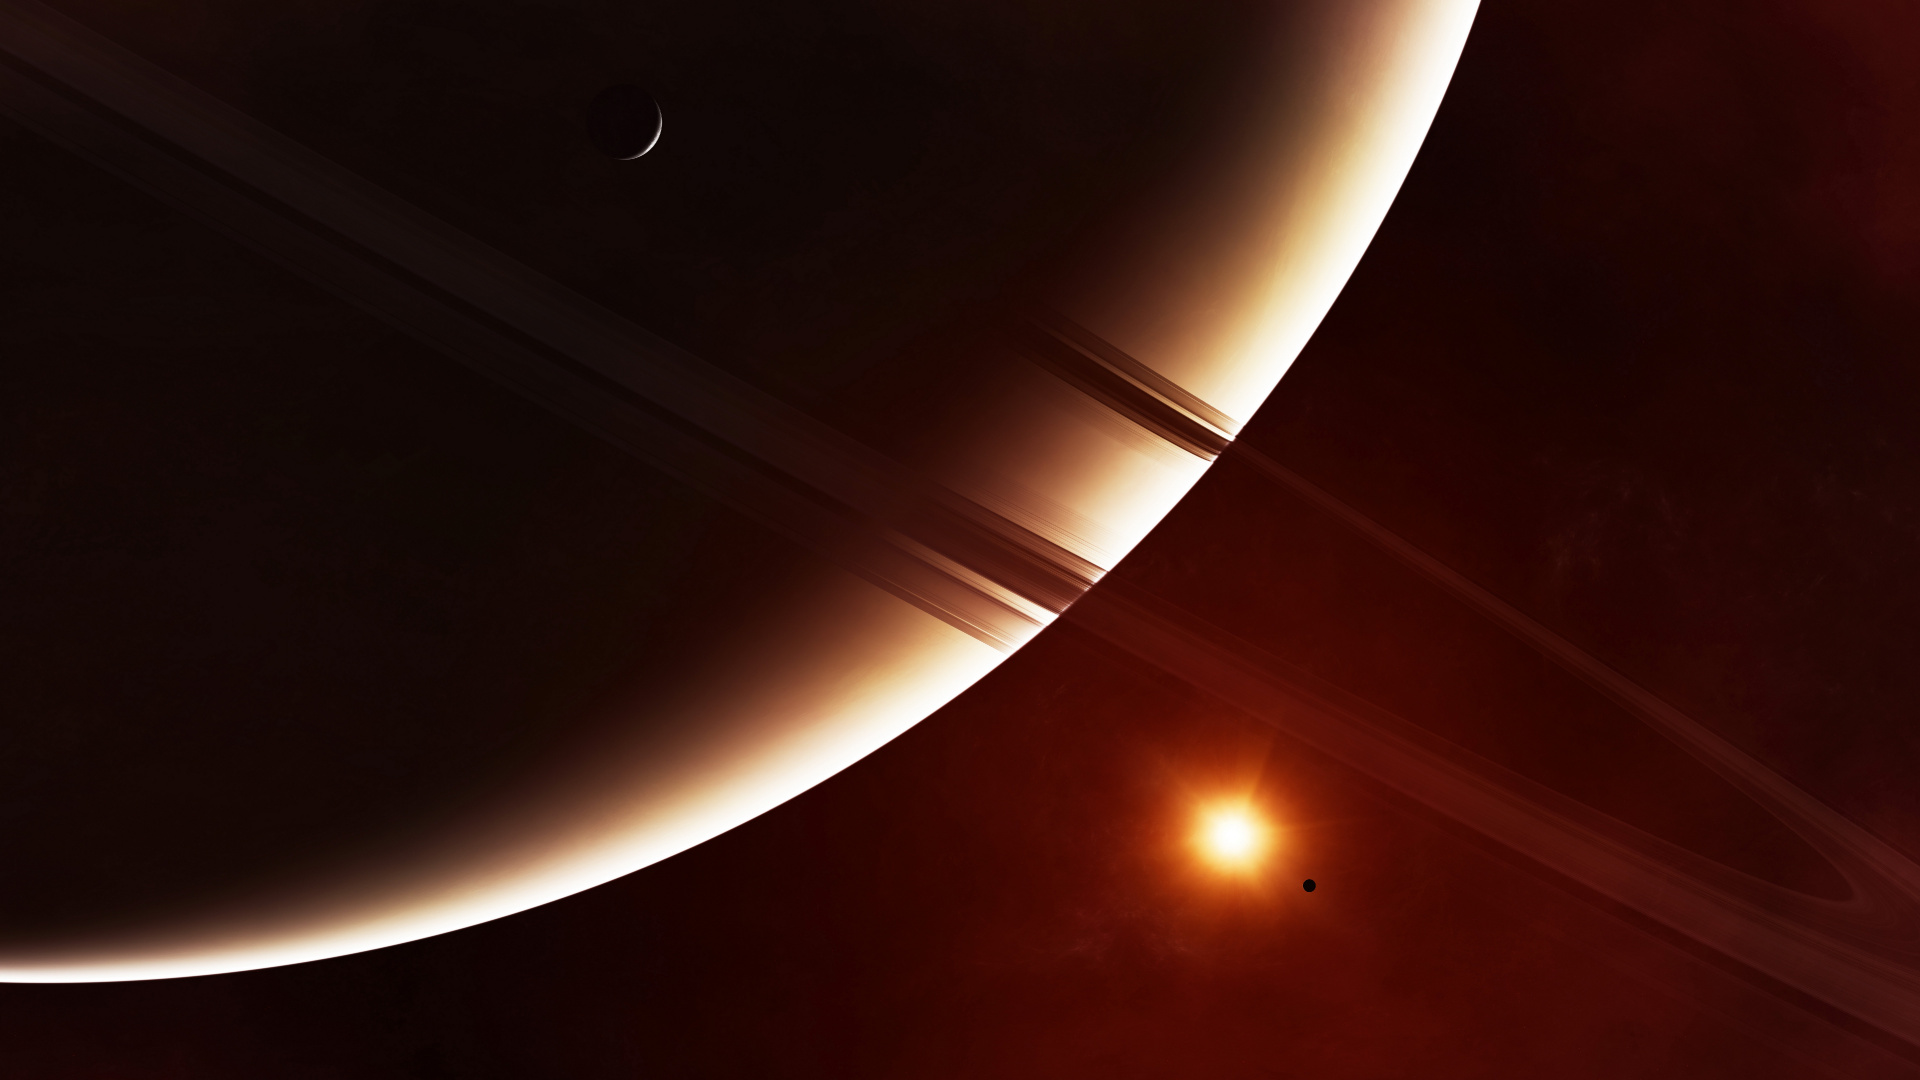 环系统, 土星, 这个星球, 天文学对象, 光 壁纸 1920x1080 允许